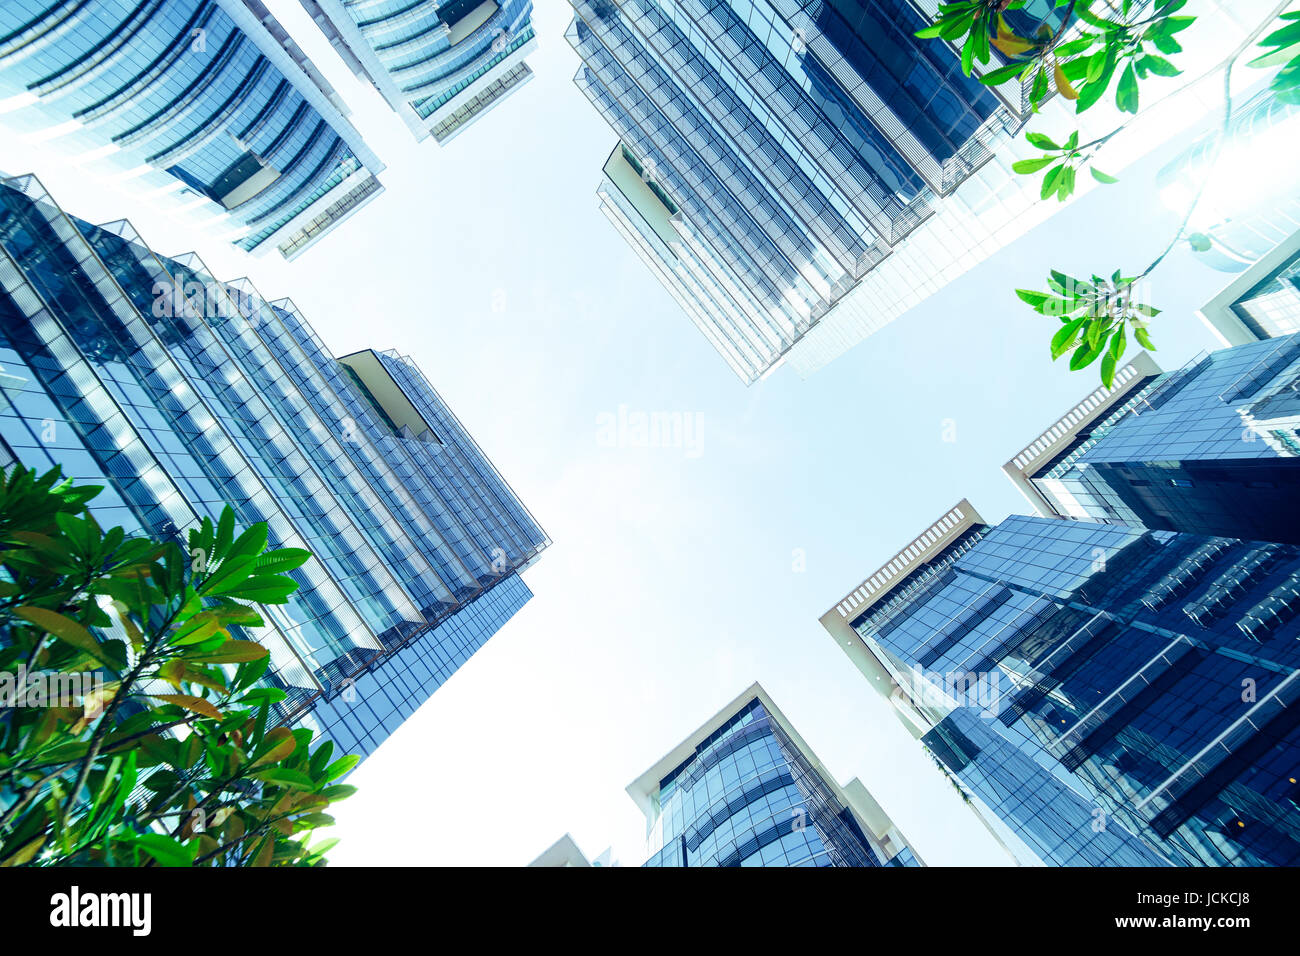 Comune di affari moderni grattacieli, alti edifici di architettura, alzando al cielo, sun. Concetti di financial, economia, futuro etc. Foto Stock